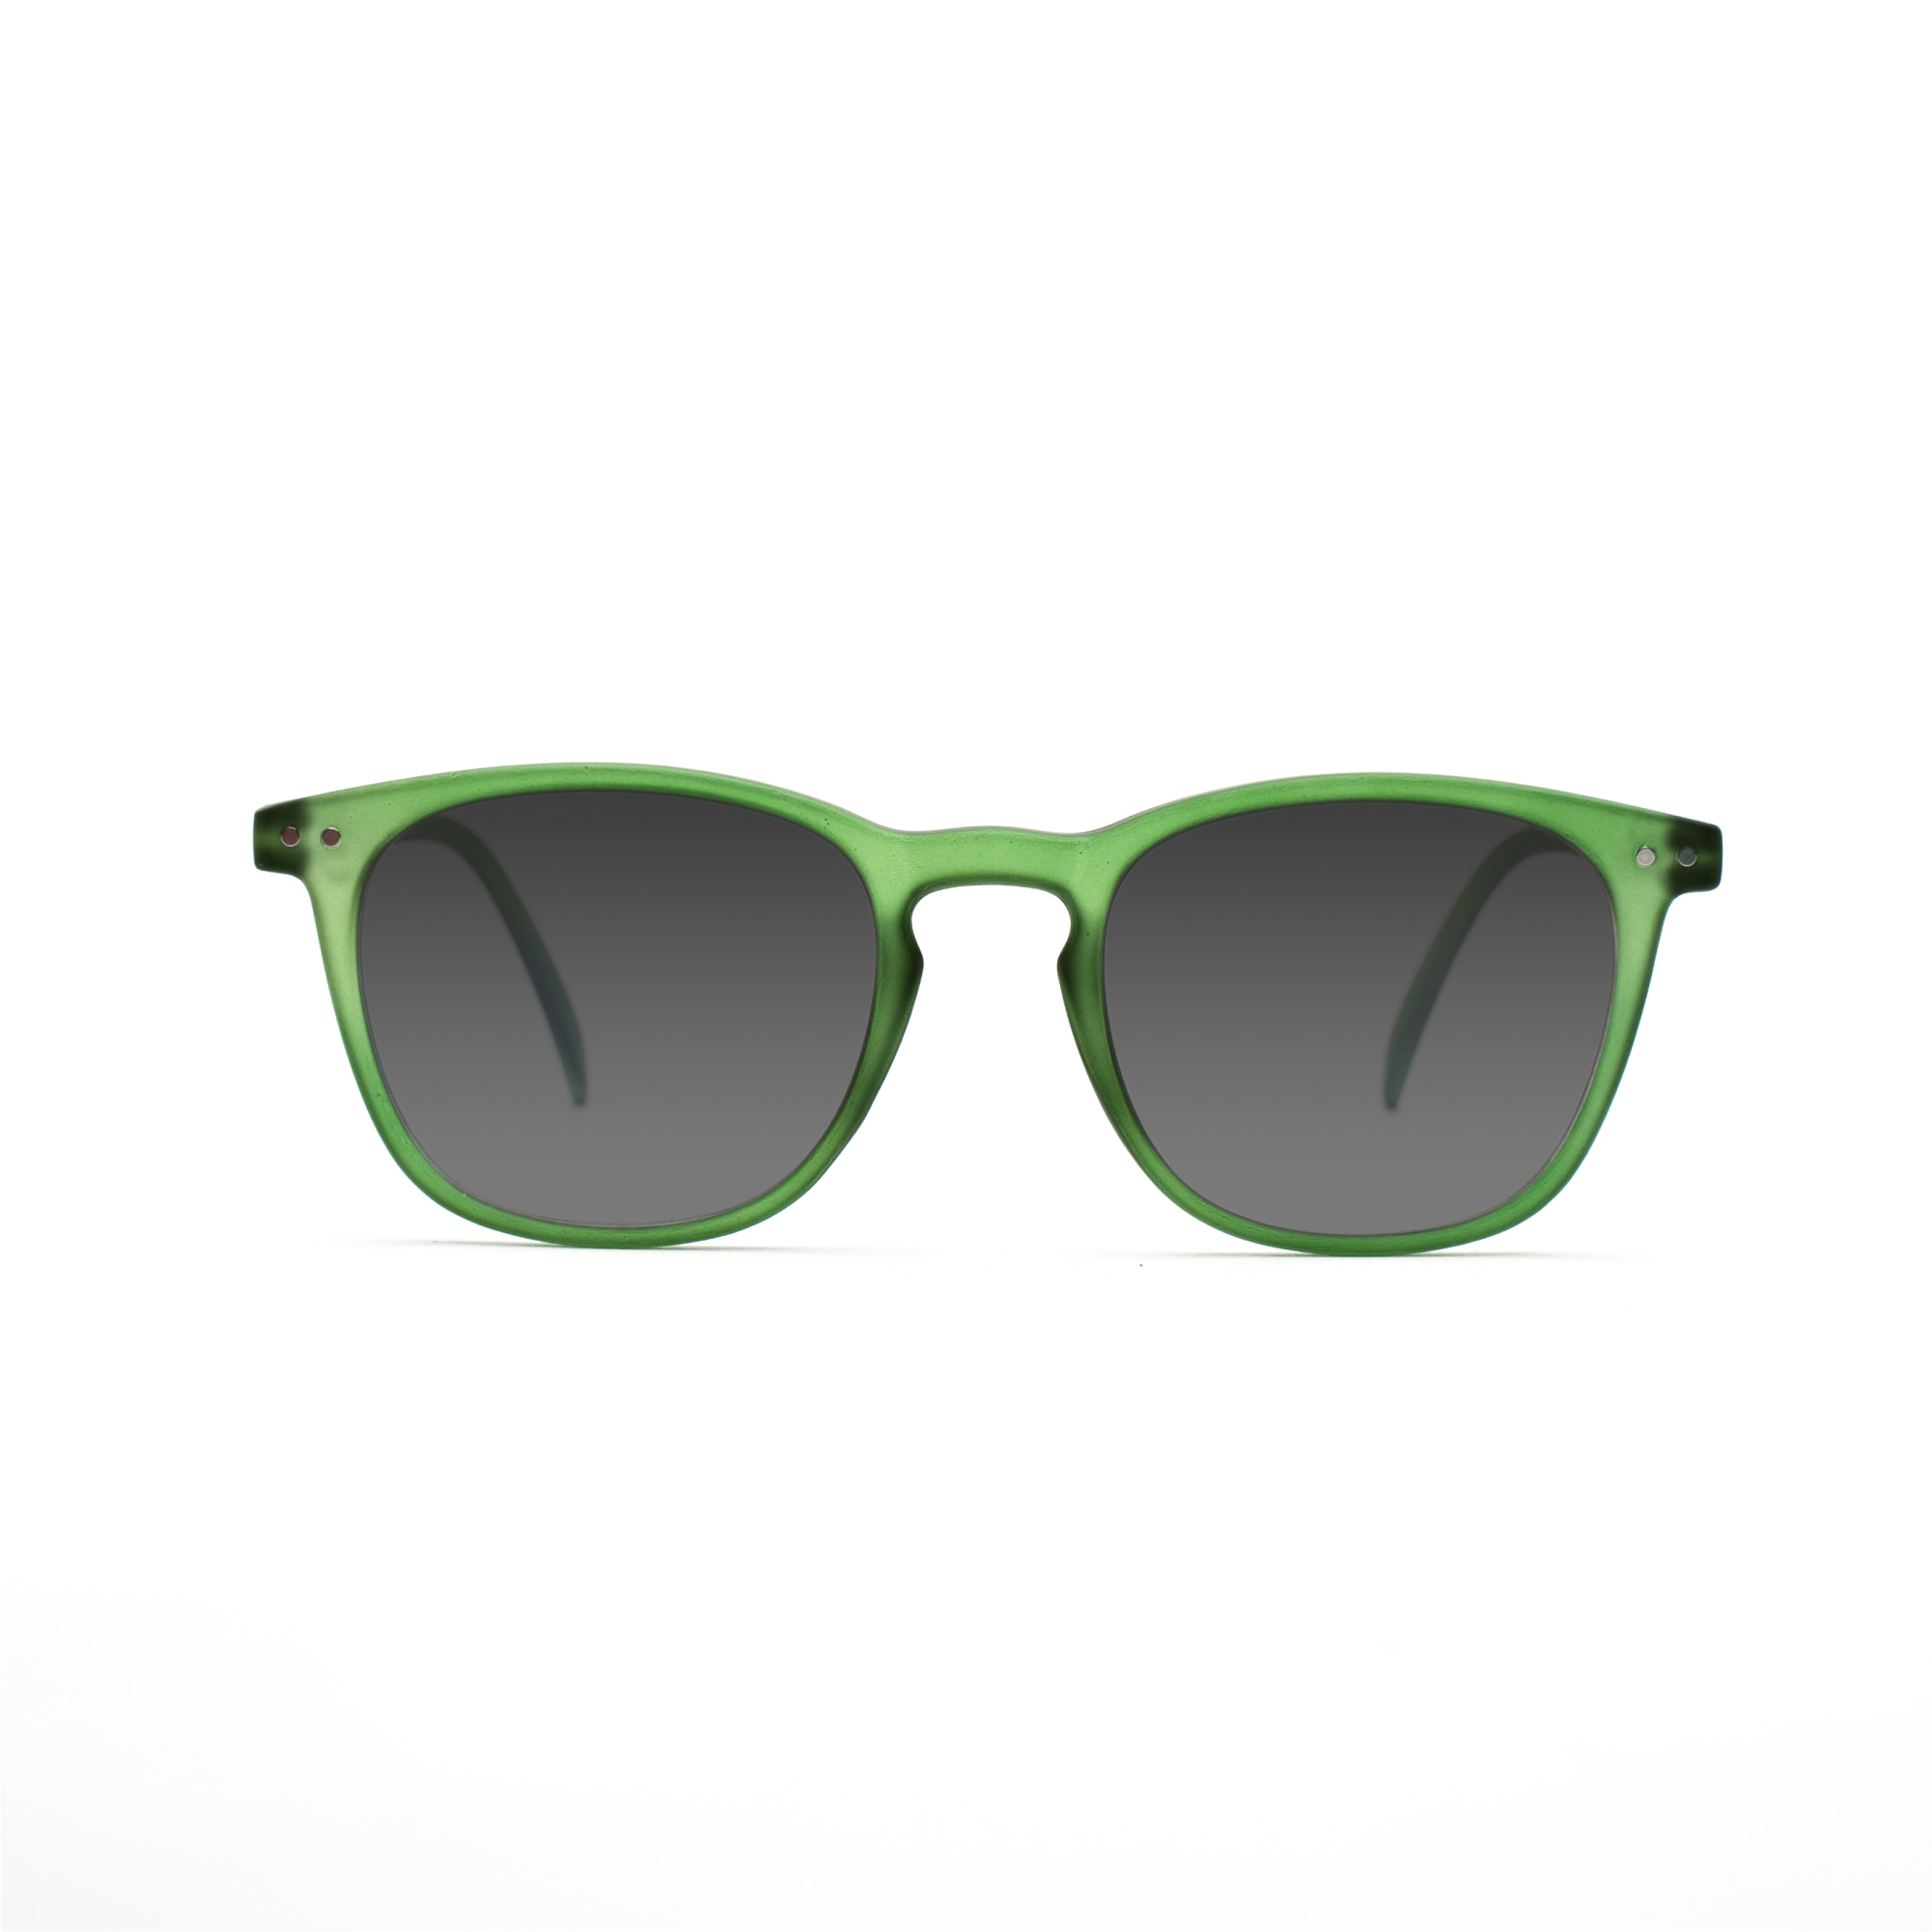 men's sunglasses – William UVSUN m - Green